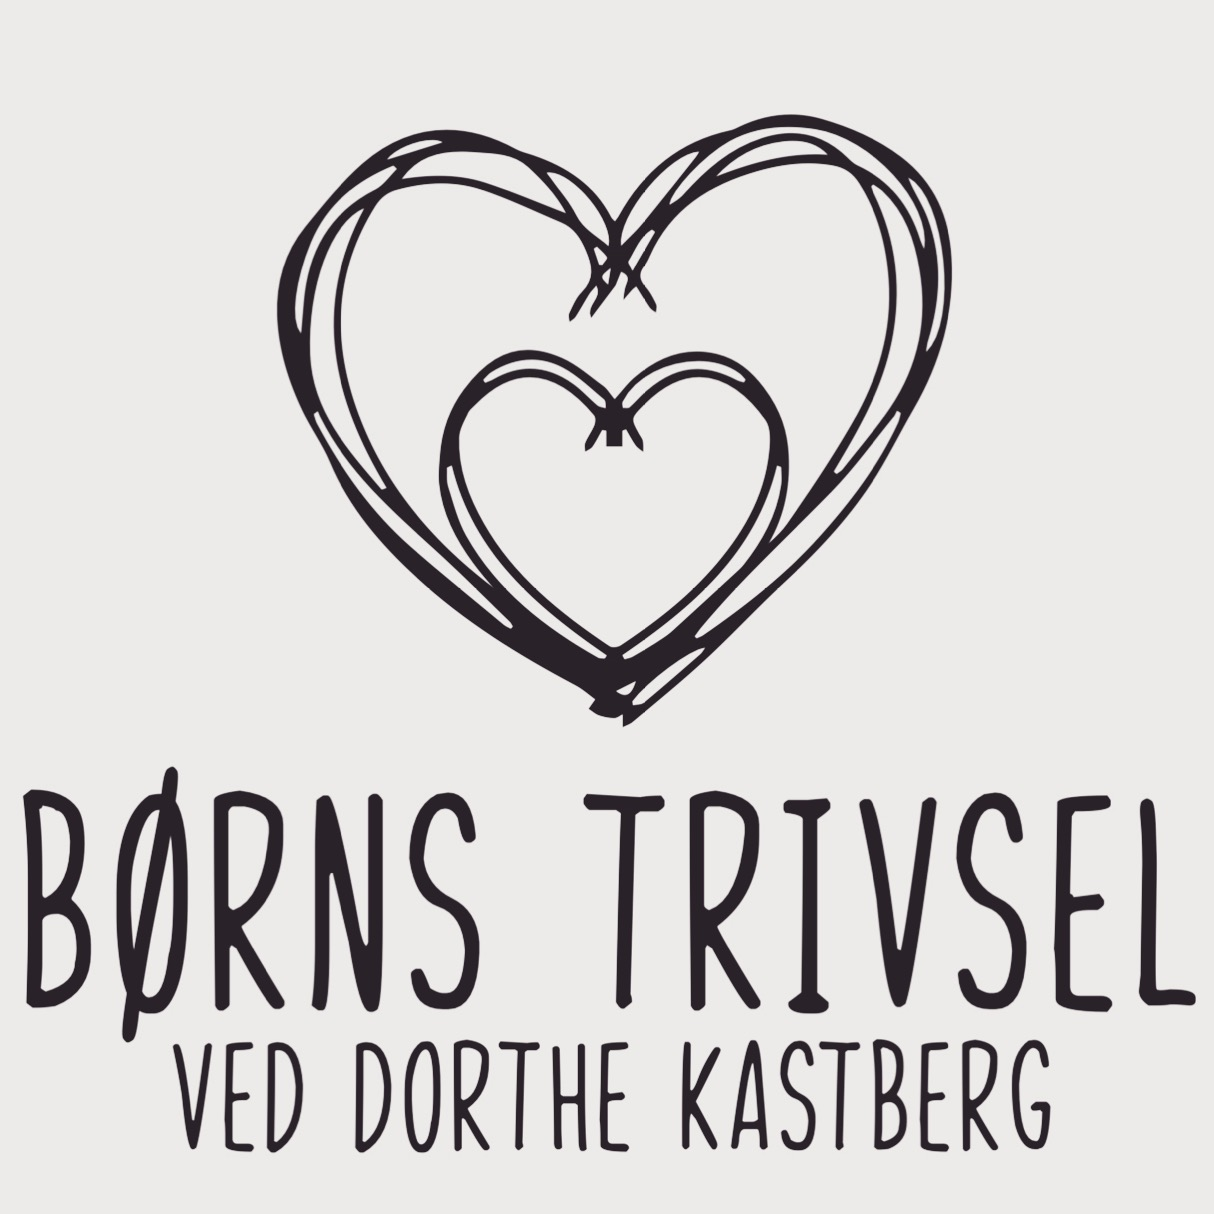 Børns Trivsel v/Dorthe Kastberg logo